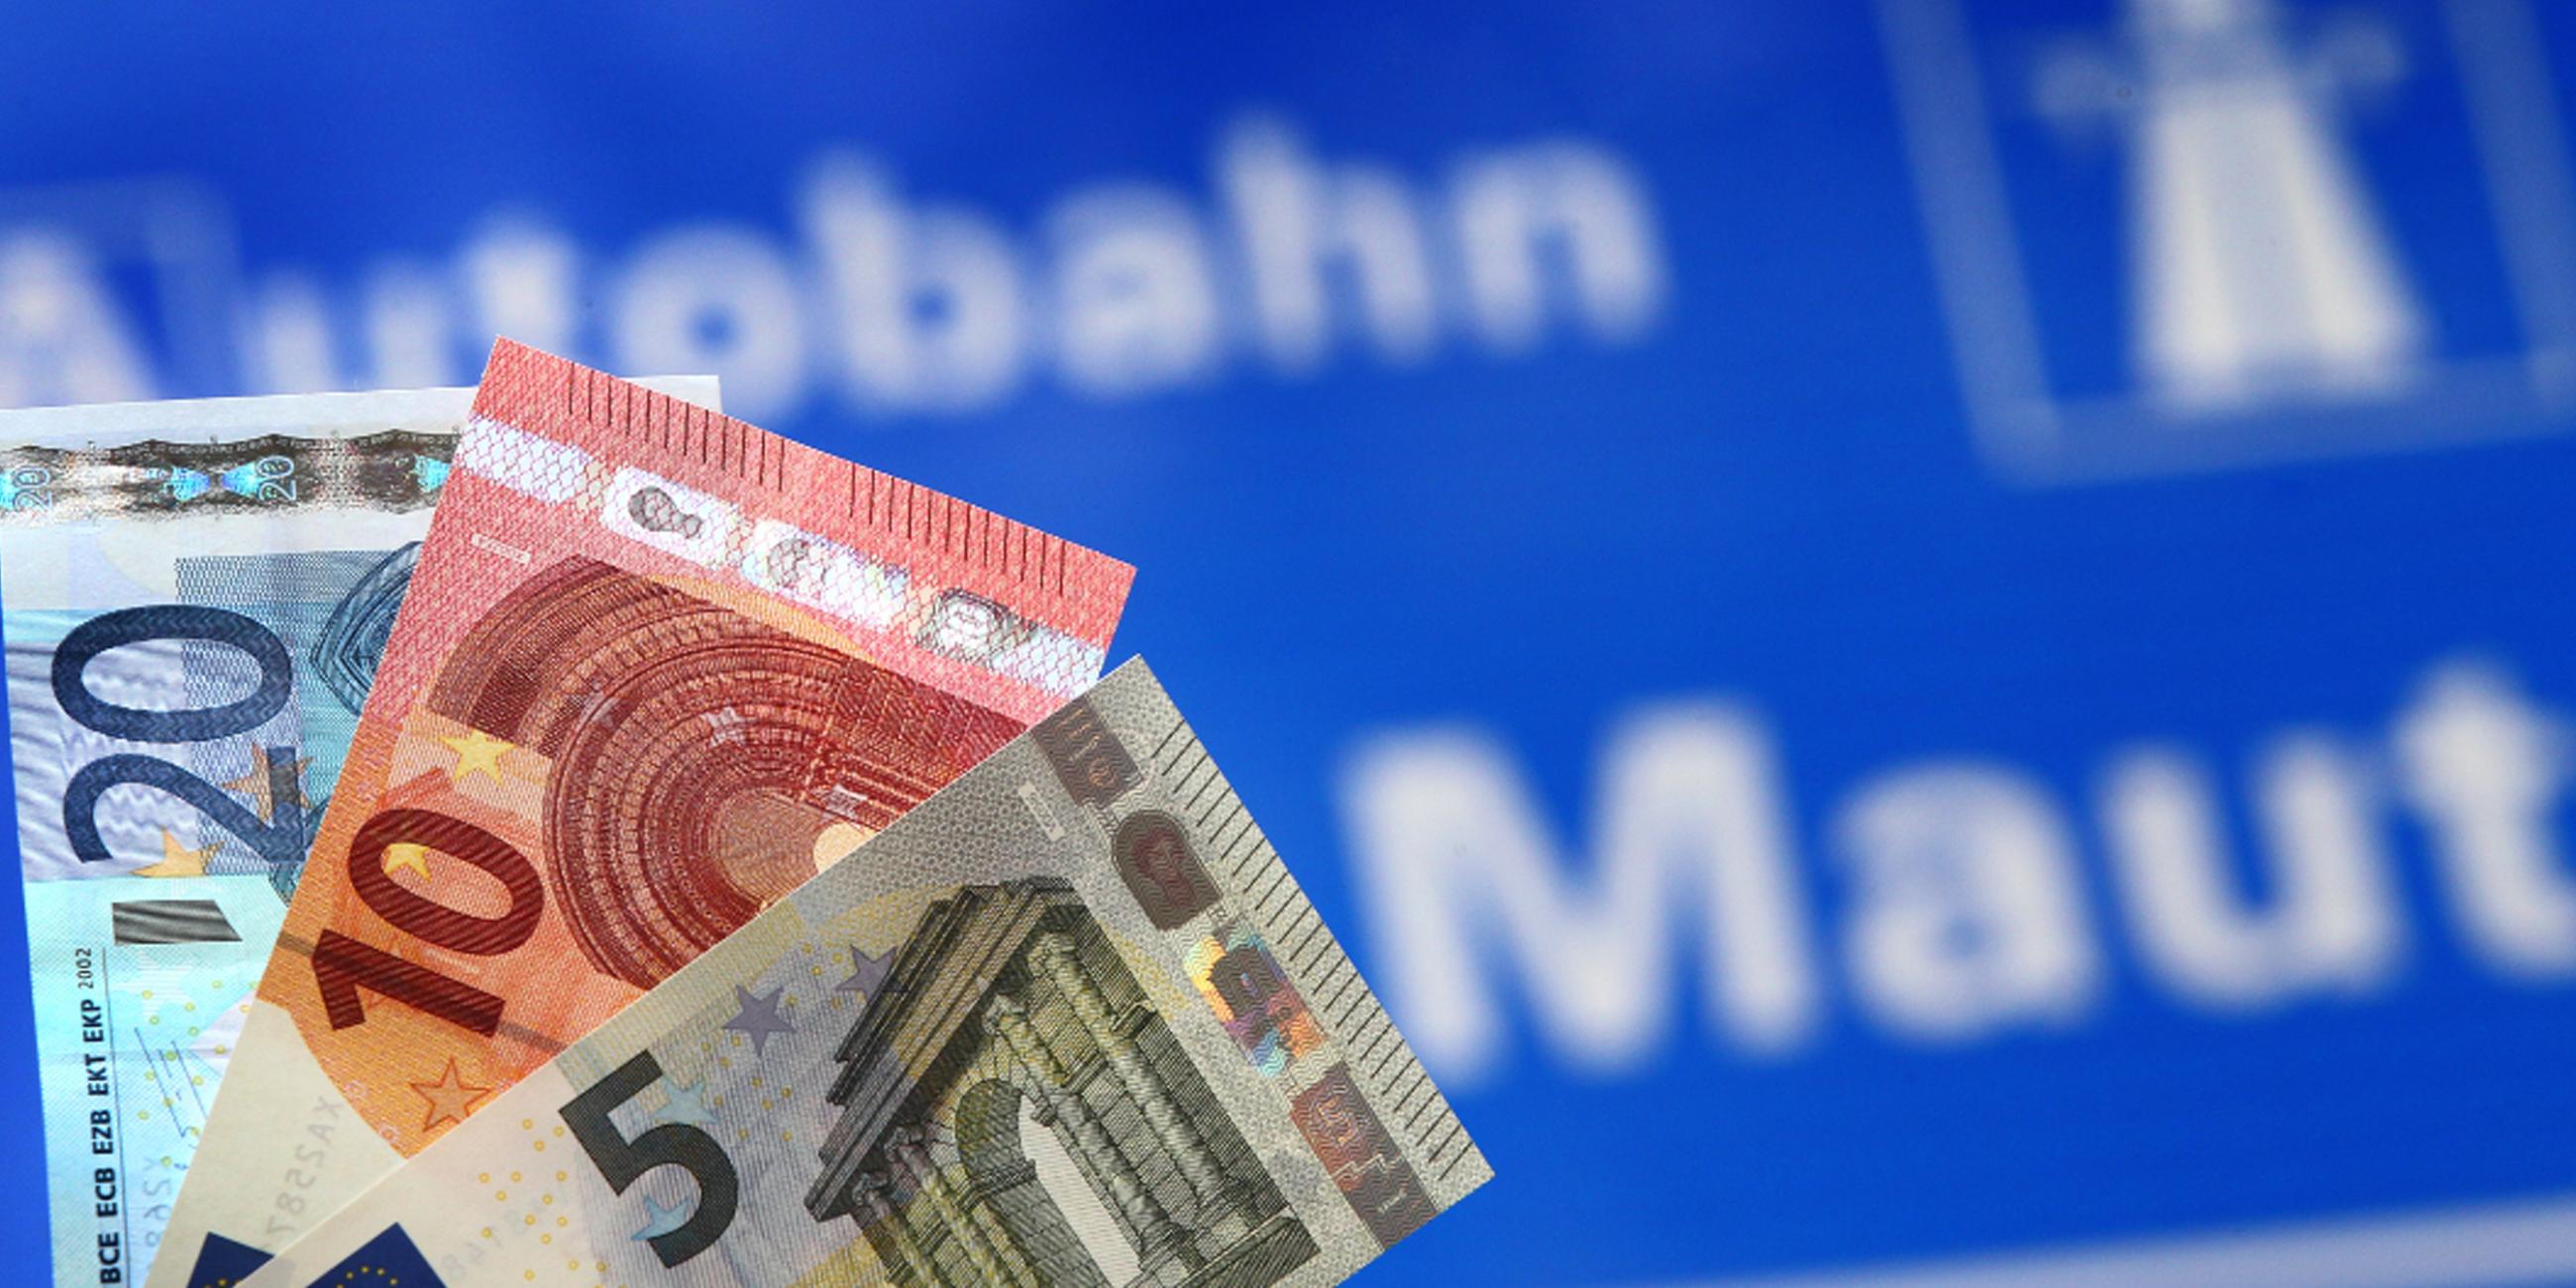 Verschiedene Euro-Banknoten werden vor ein Hinweisschild auf Mautpflicht gehalten.